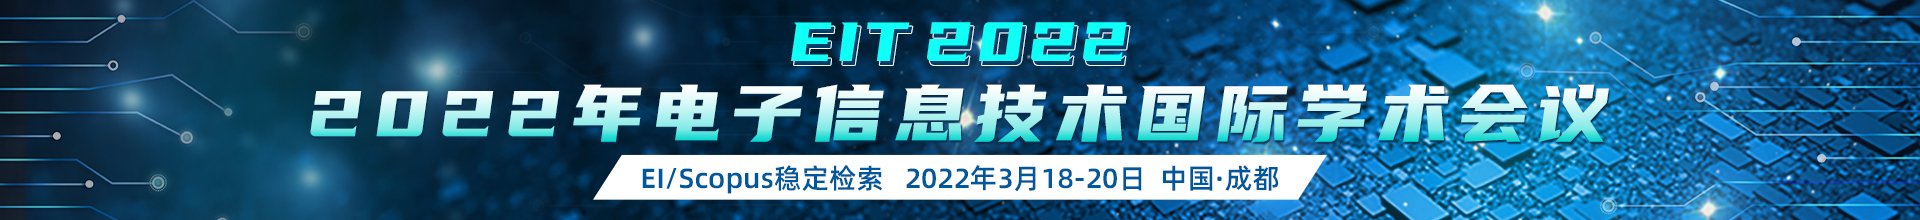 3月成都-EIT-2022-学术会议云PC端1920x220-陈军-20211116.jpg